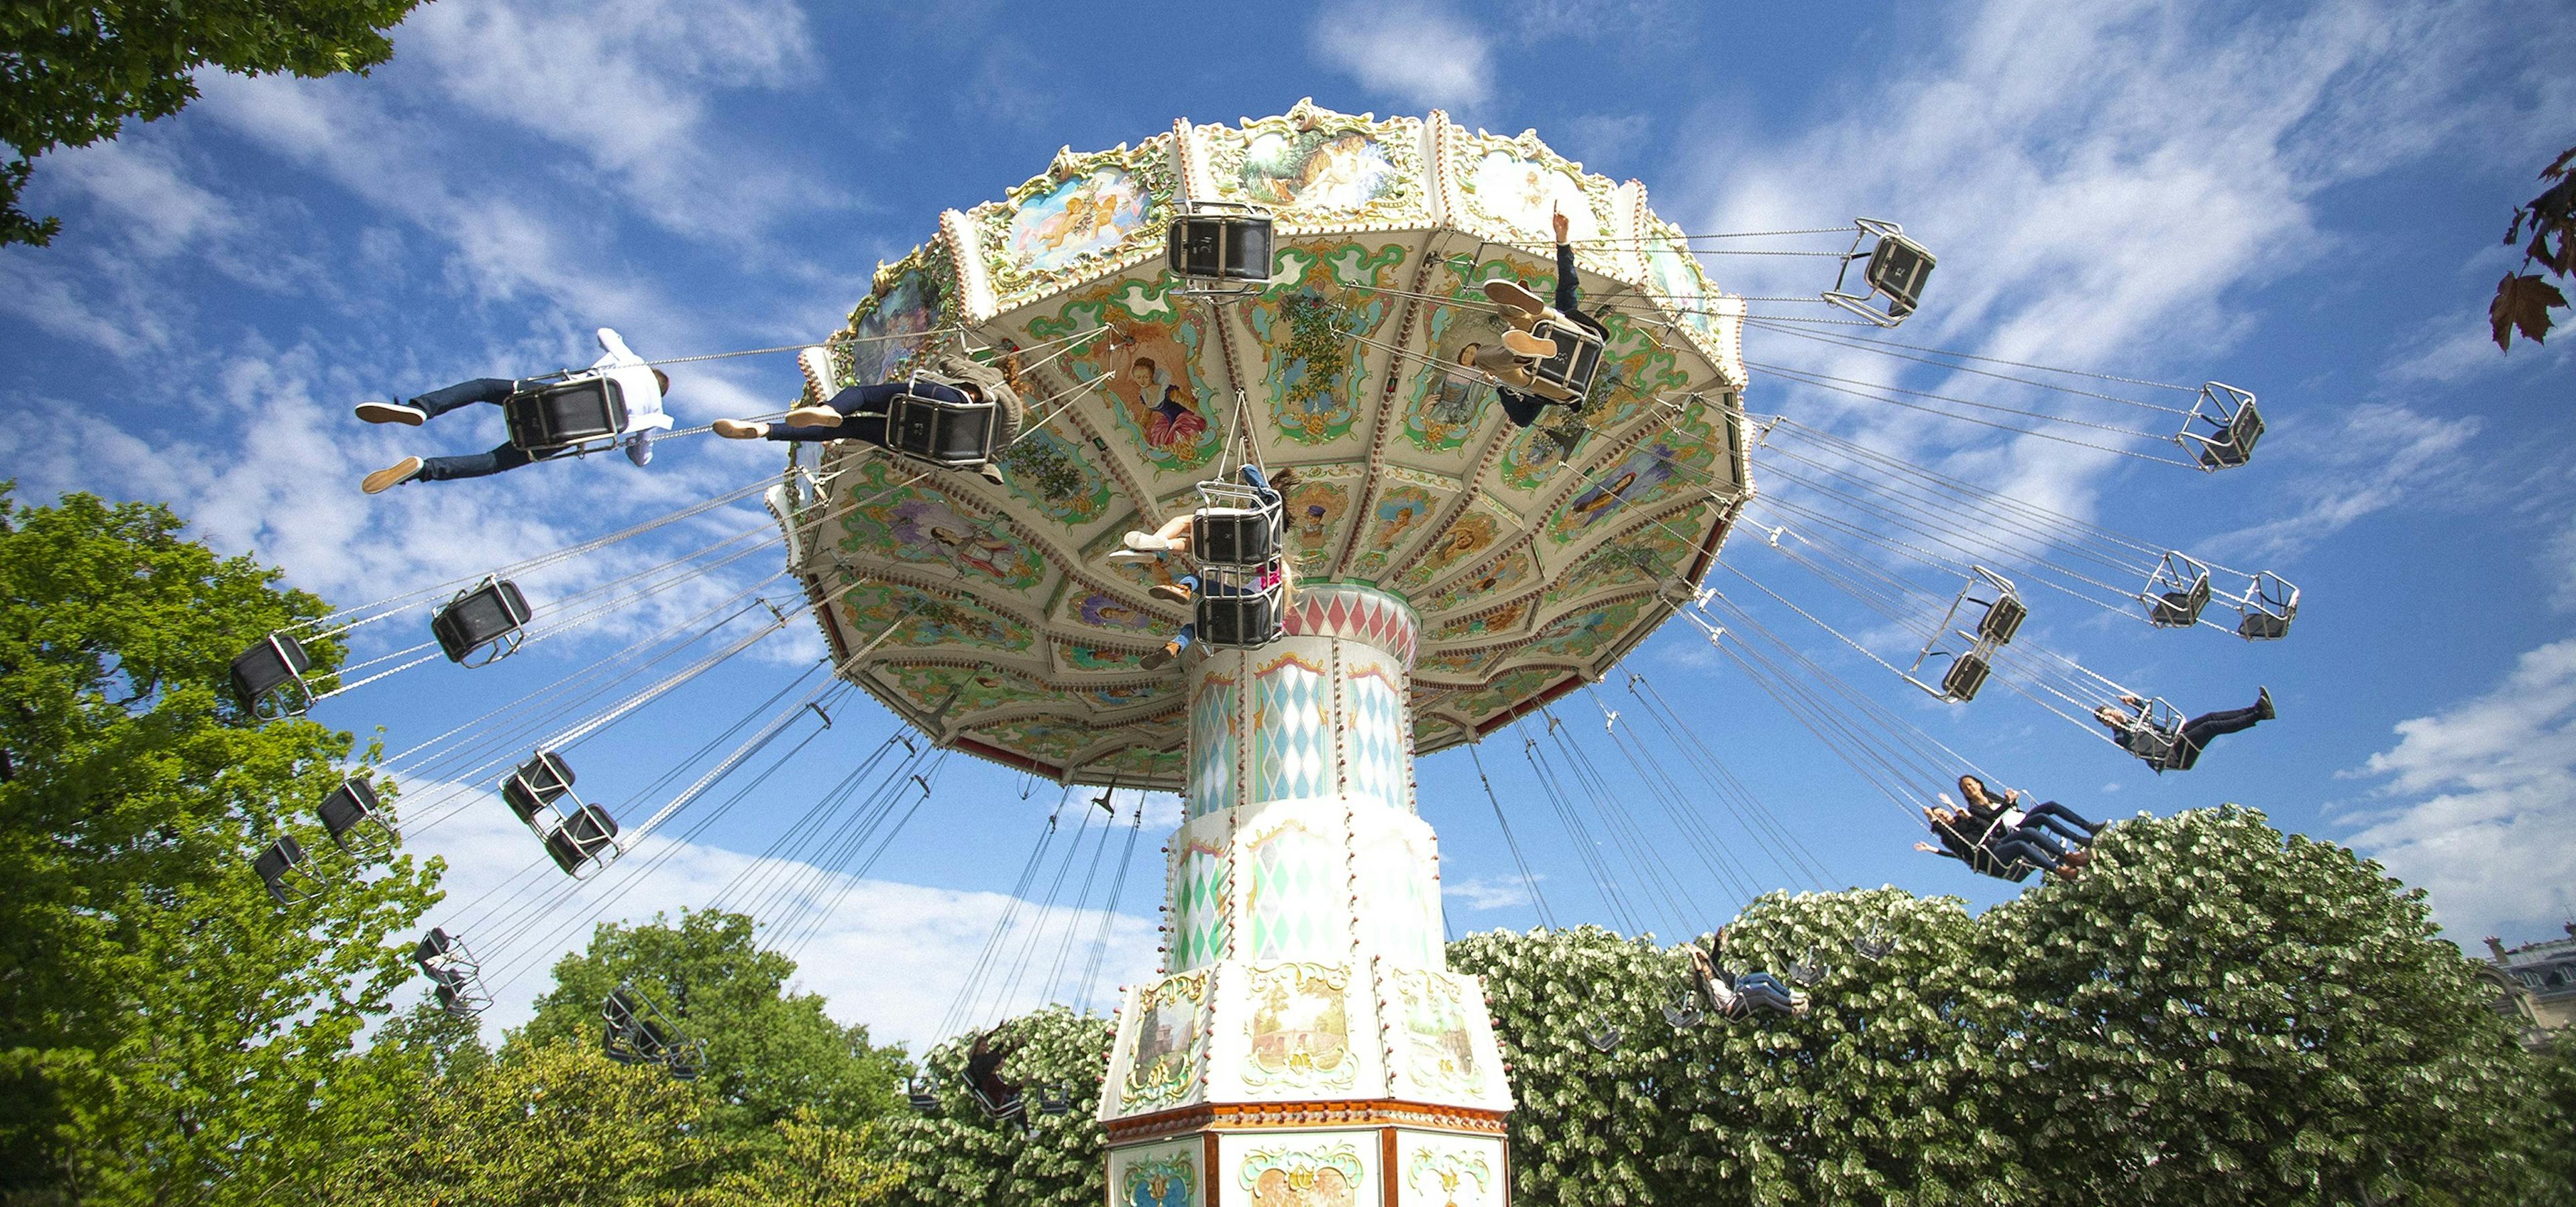 The Flying Chairs - Jardin d'Acclimatation - Paris  © Sylvain Bachelot